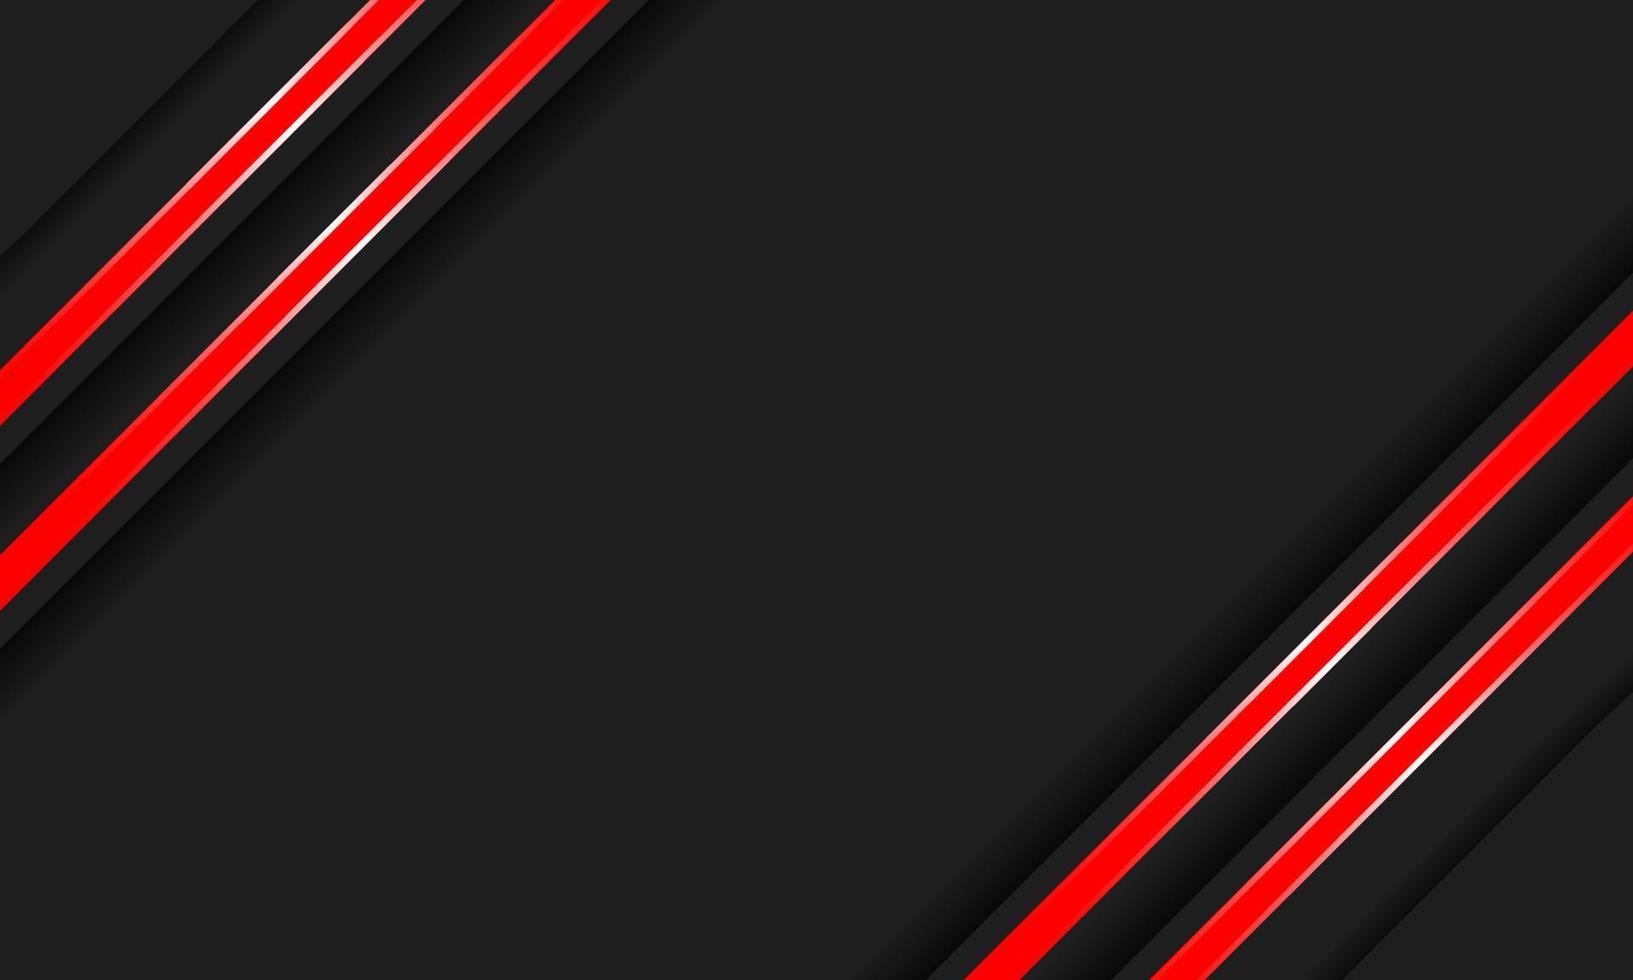 astratto bianco e nero moderno del fondo rosso chiaro vettore